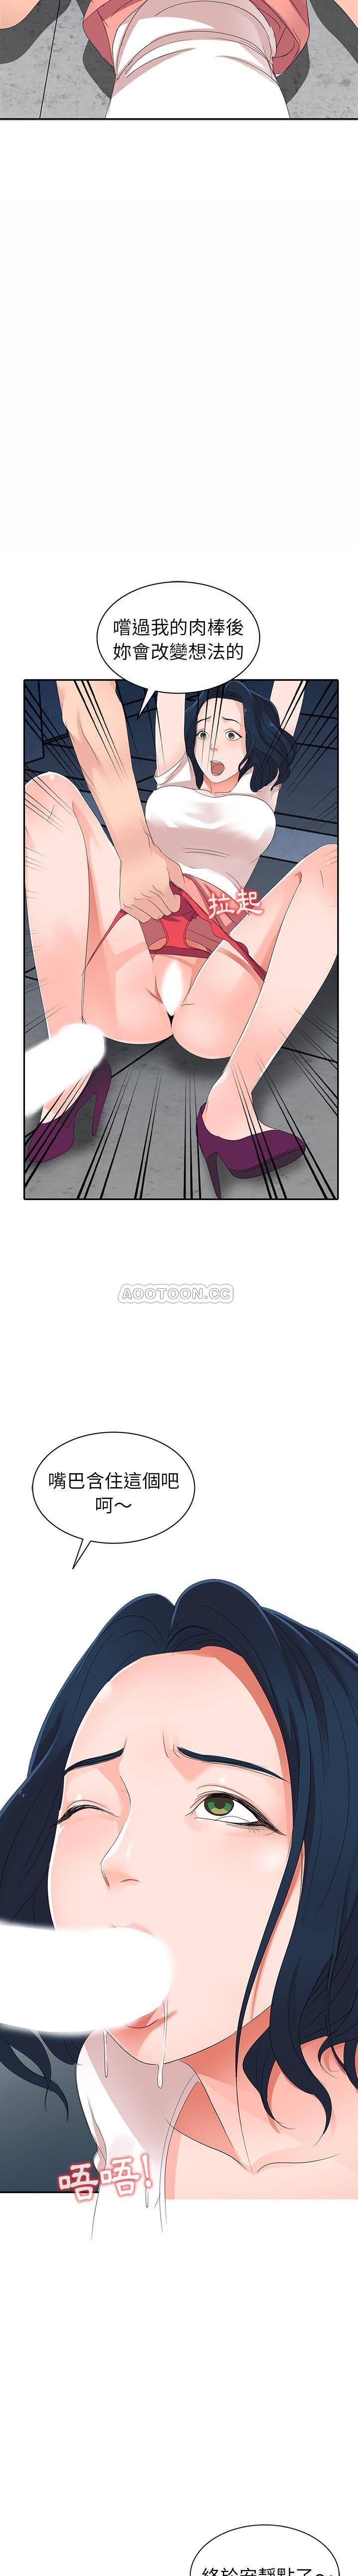 韩国污漫画 愛的第一課 第2话 20